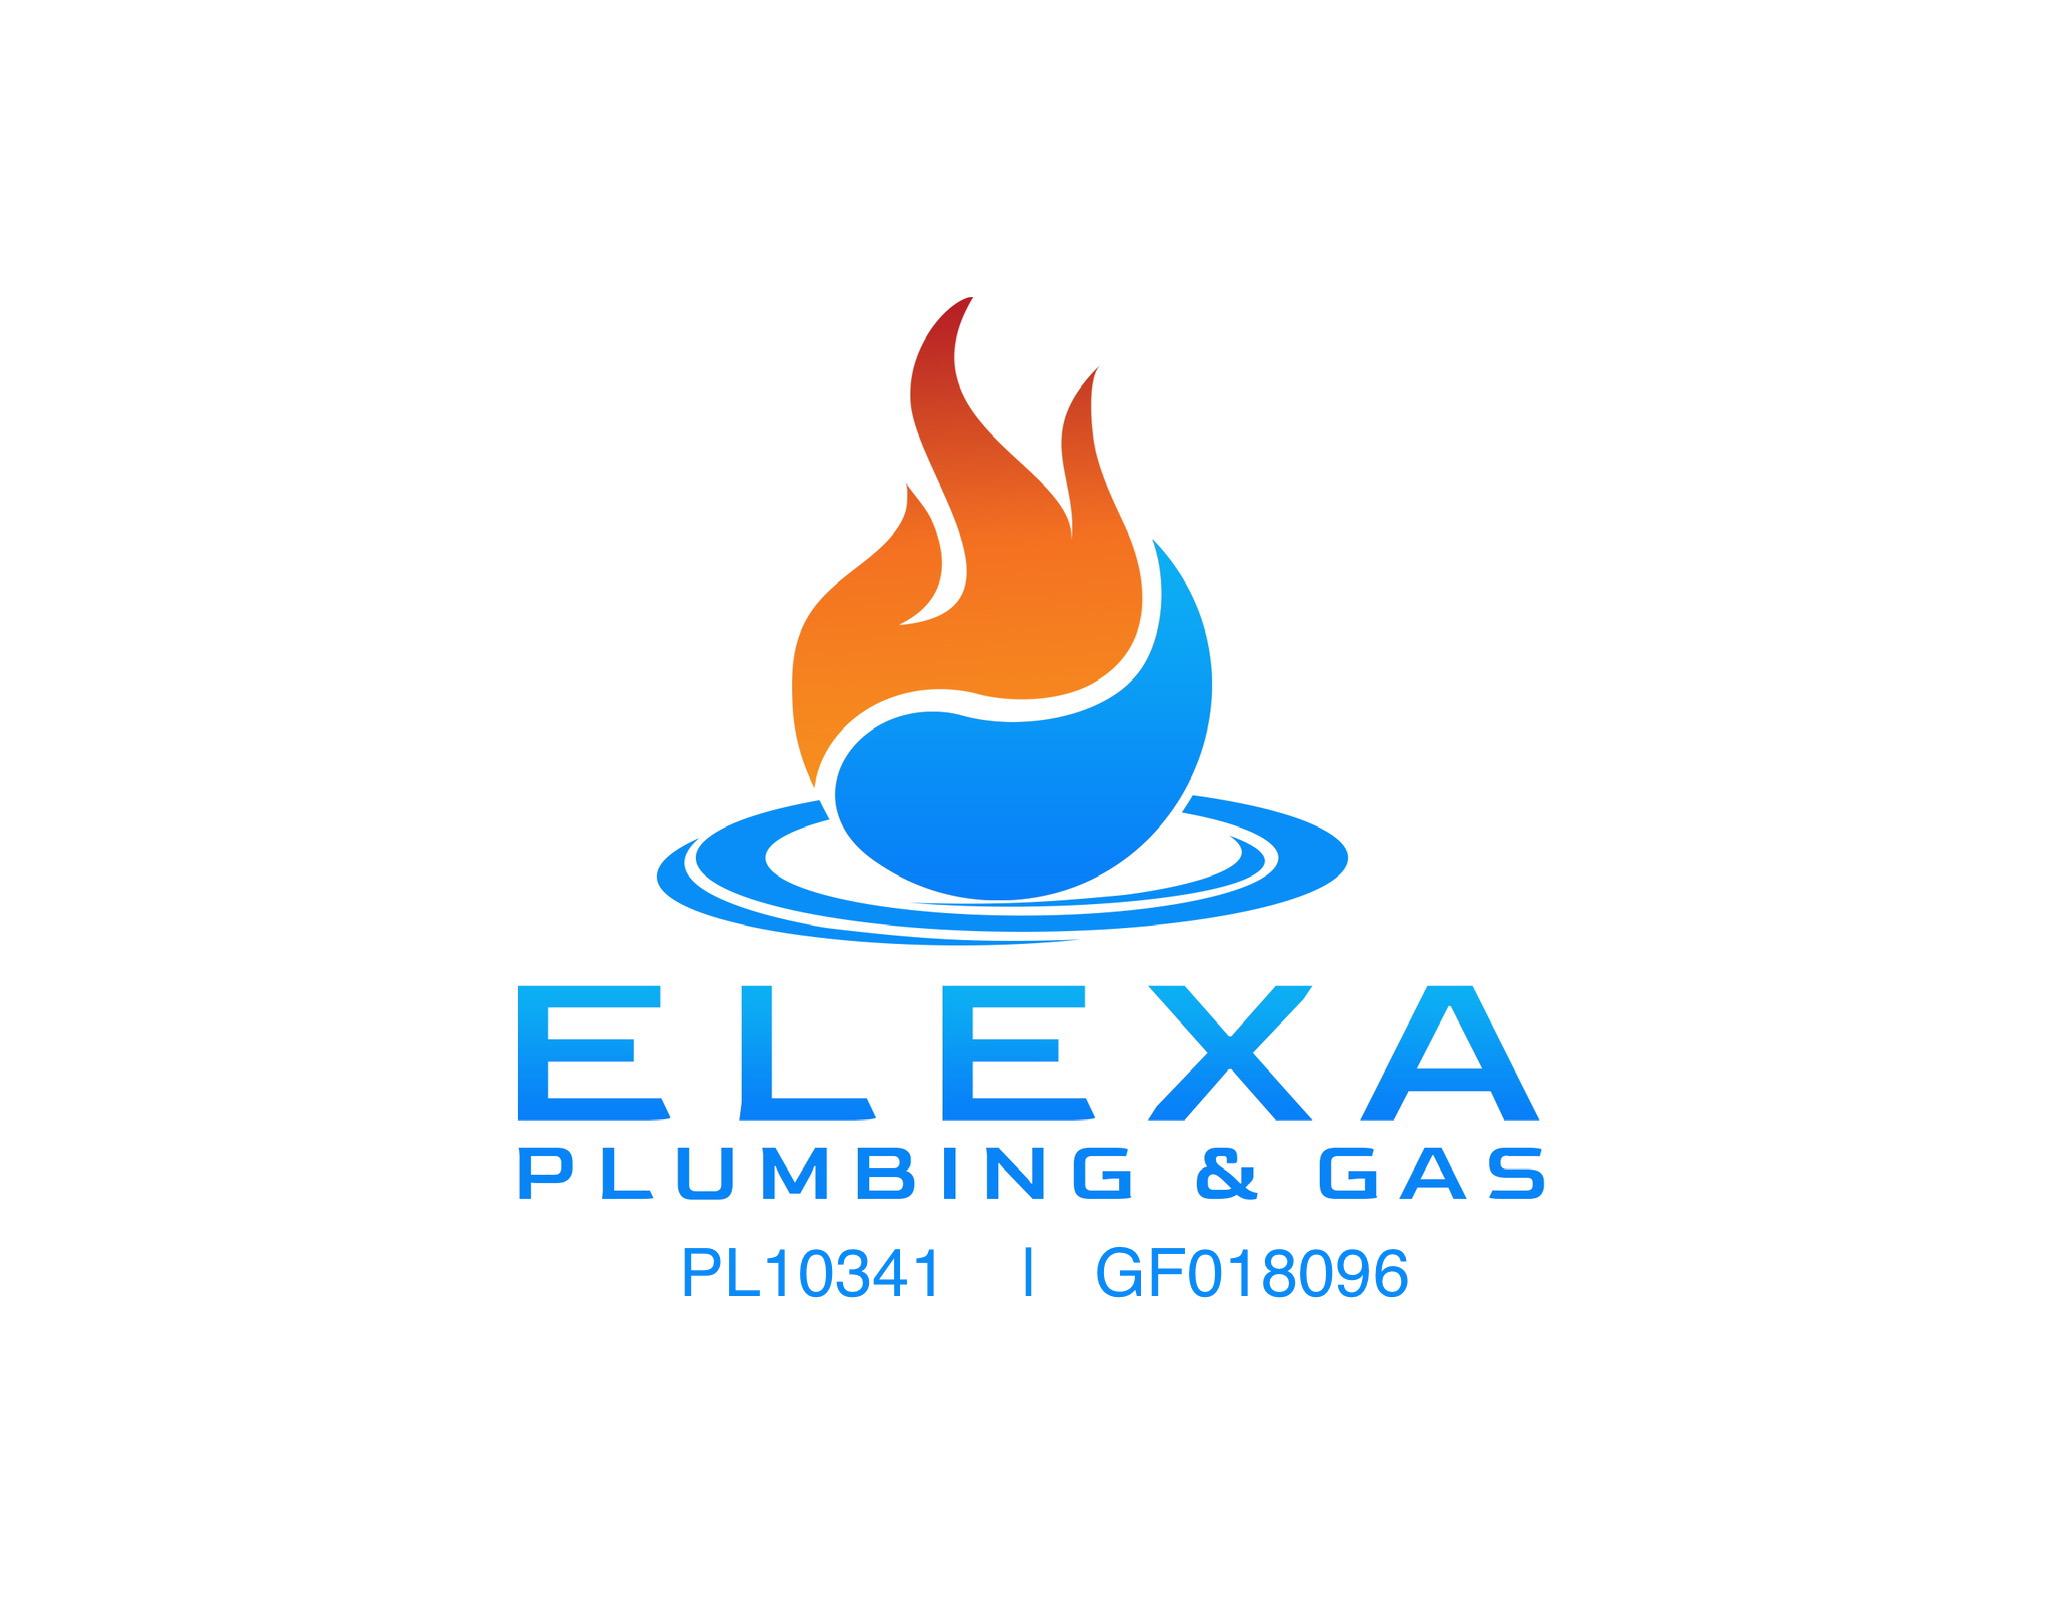 Elexa Plumbing and Gas